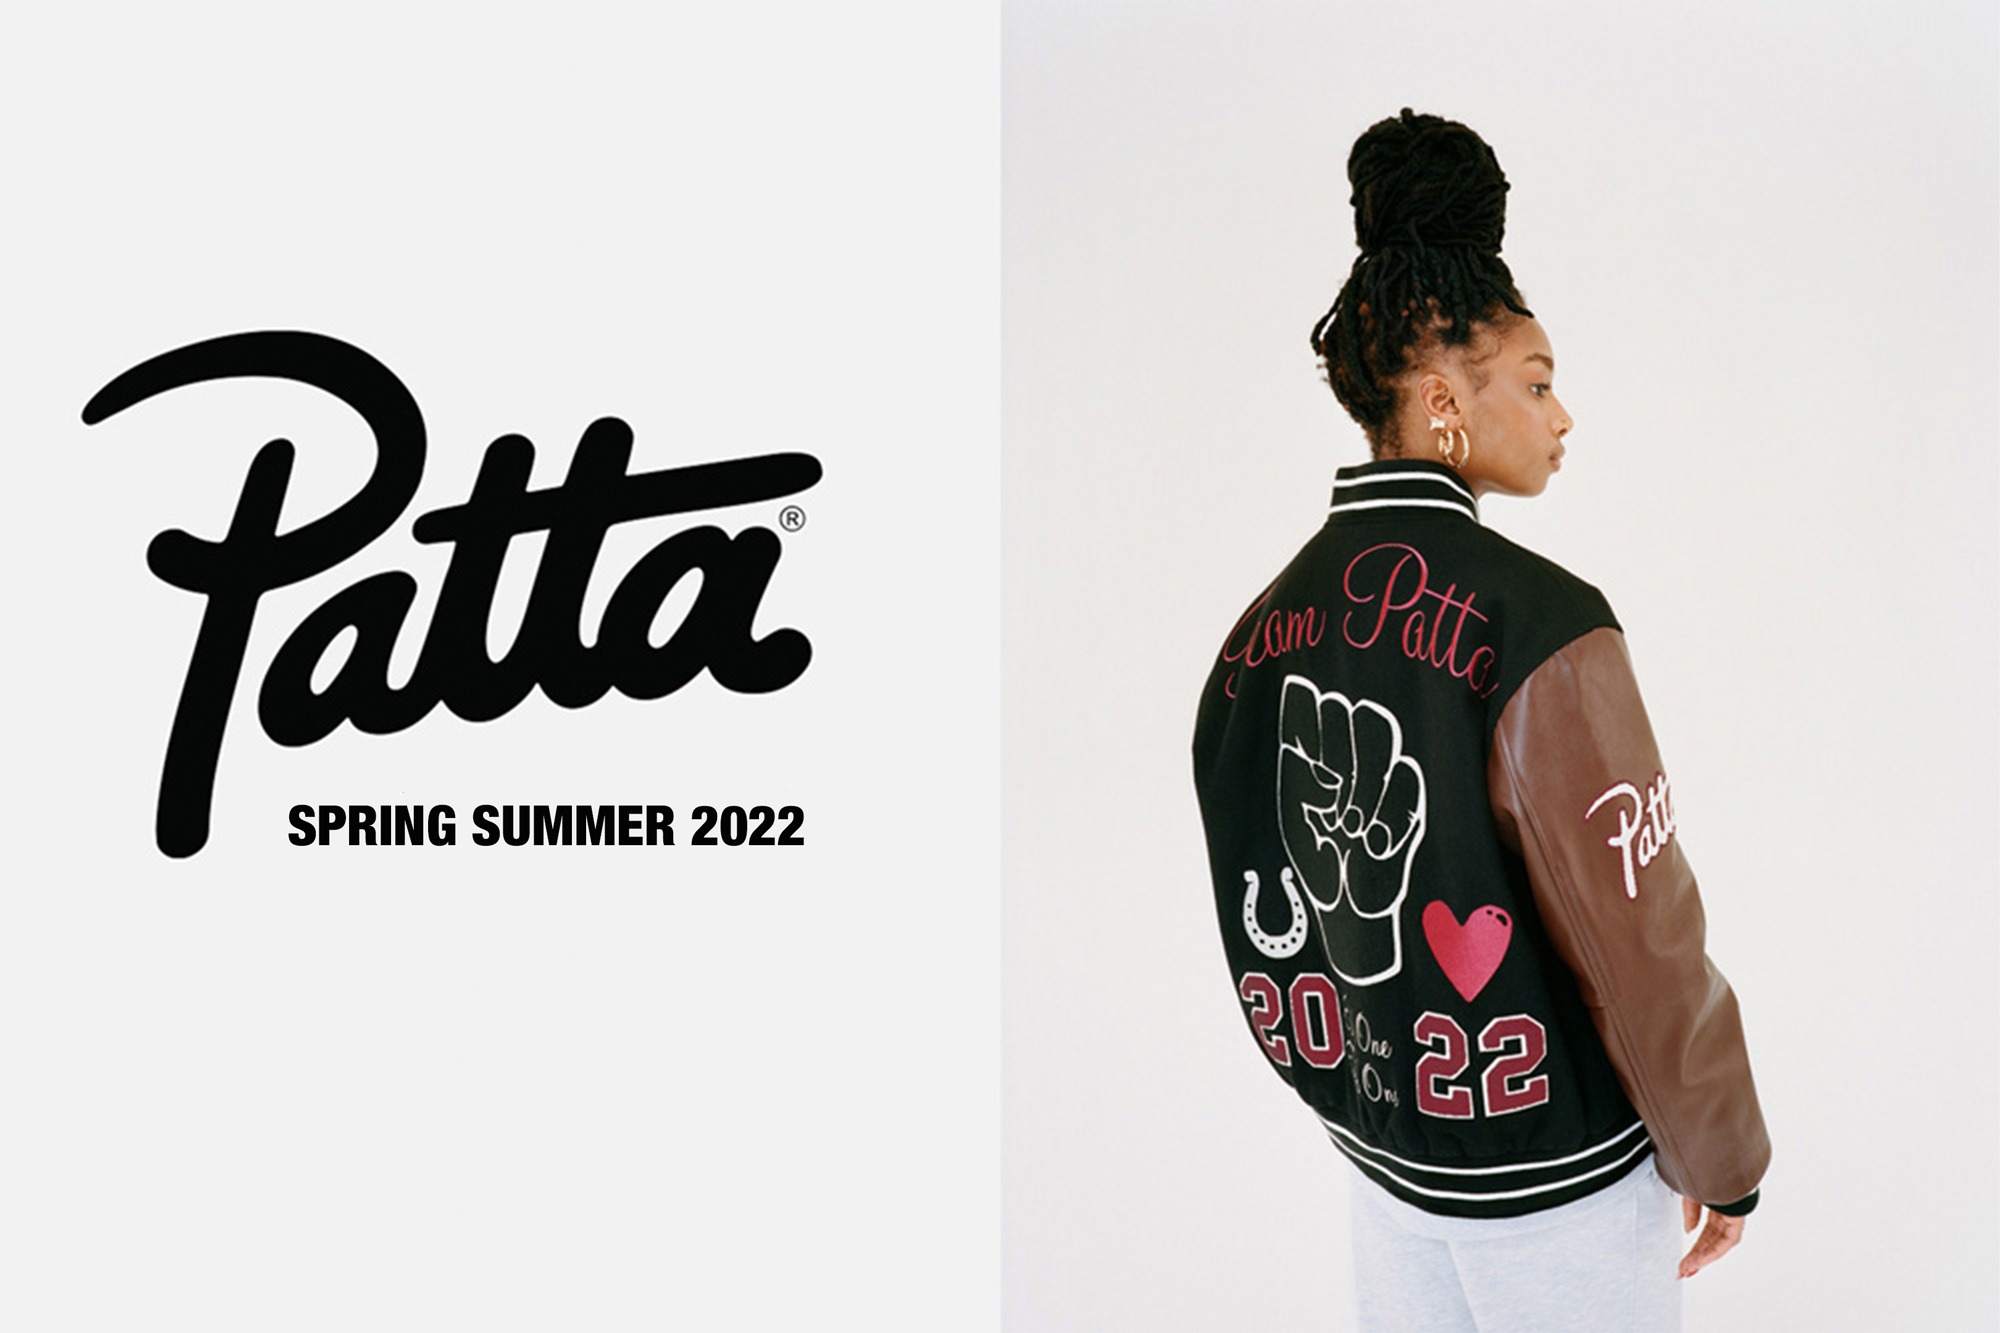 Patta Spring Summer 2022